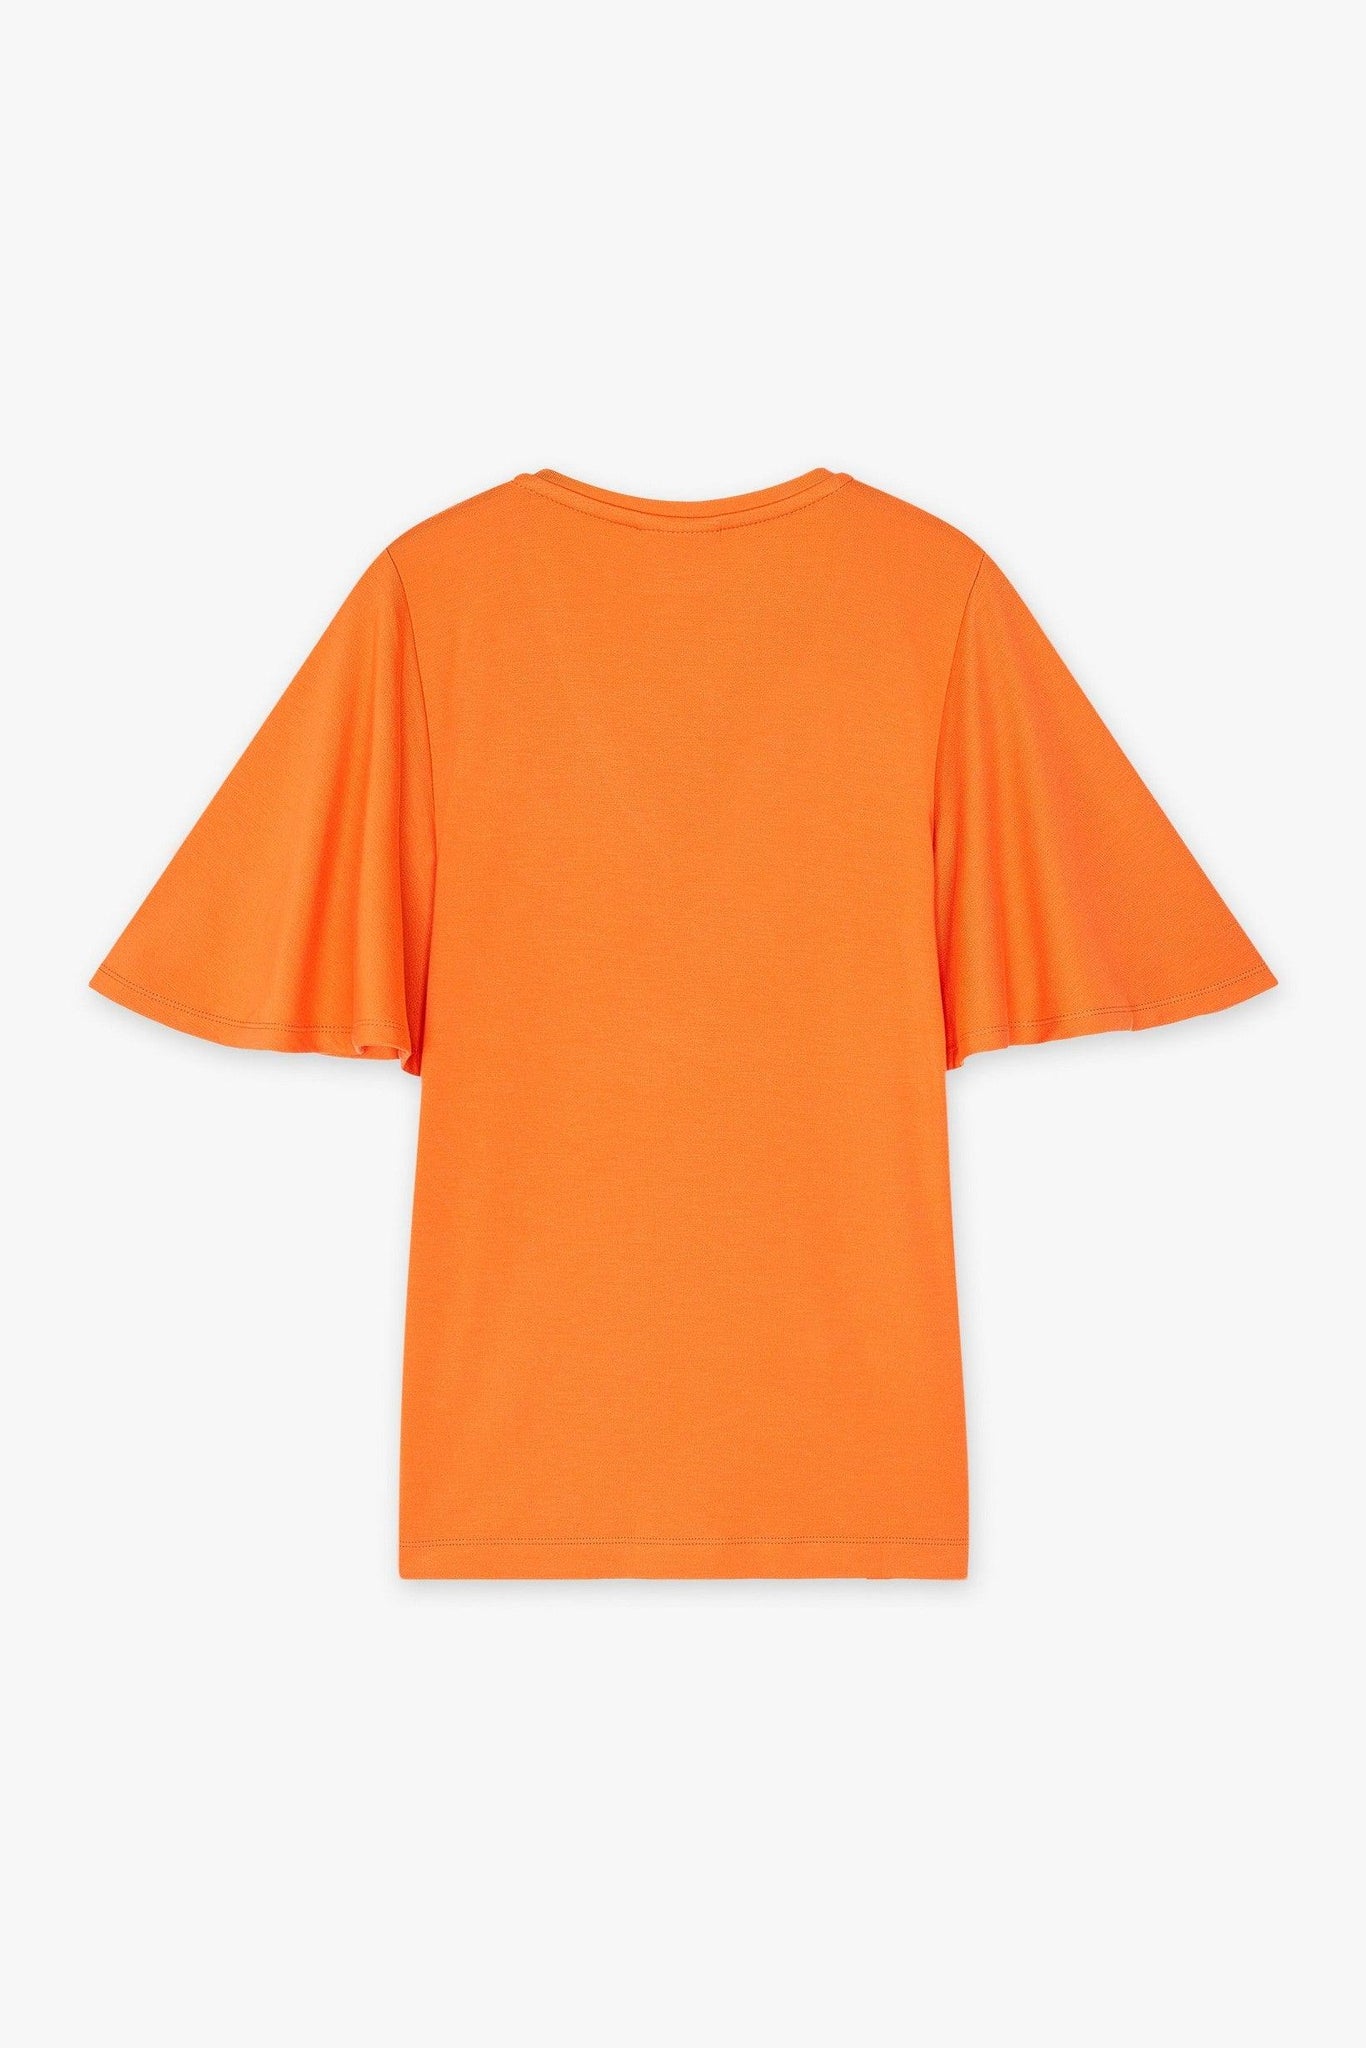 Camiseta CKS Tiko Bright Orange - ECRU